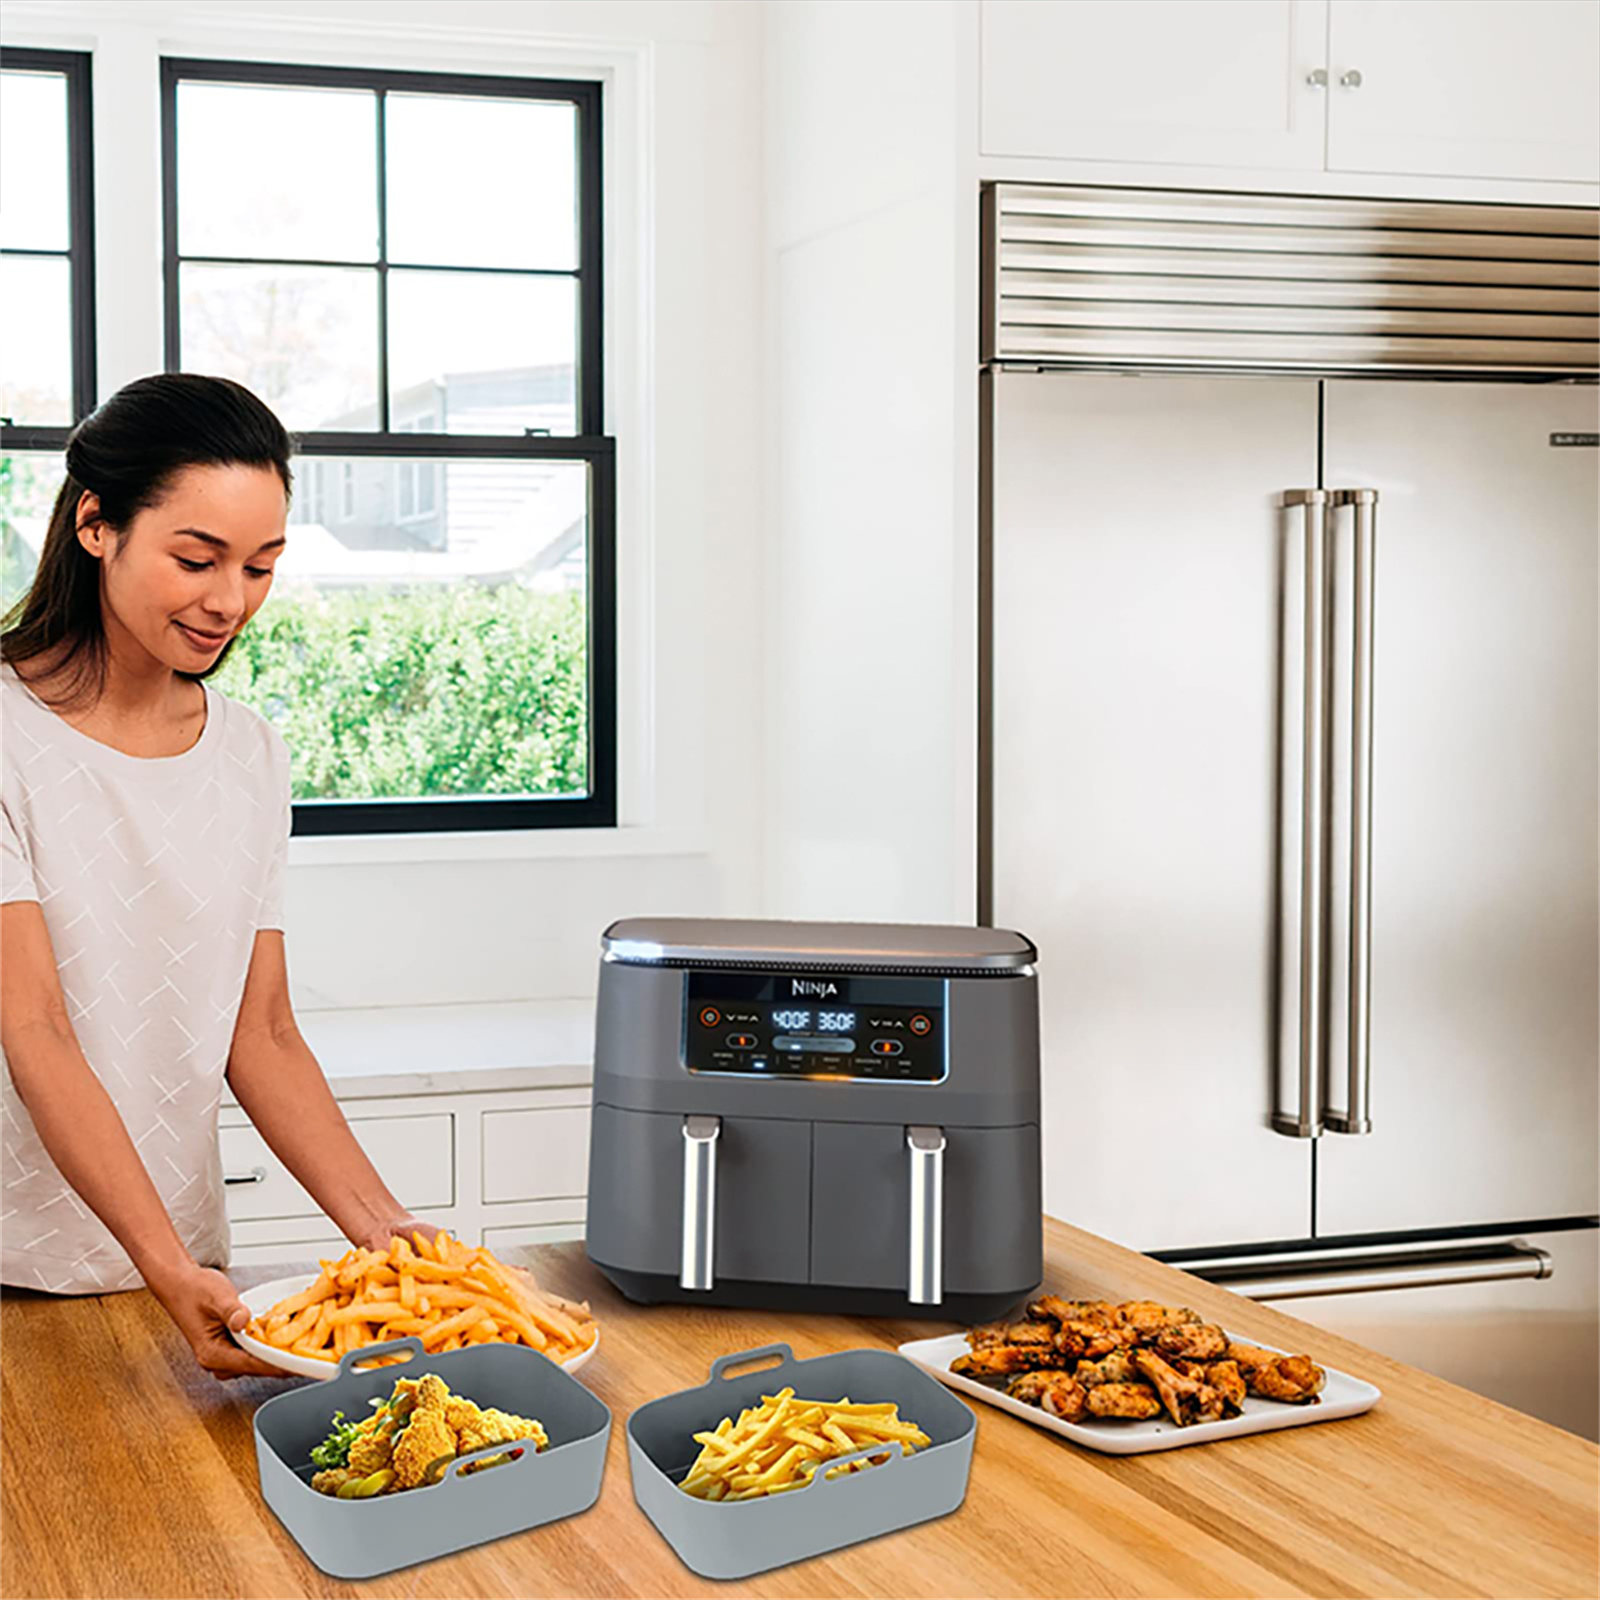 Air Fryer Silicone Pot 2PCS en Silicone pour Ninja Foodi Dual DZ201/DZ401  Friteuse Air Fryer Rack Accessoire Facile à Nettoyer pour Air Fryer Four  Micro-ondes (Gris) : : Cuisine et Maison